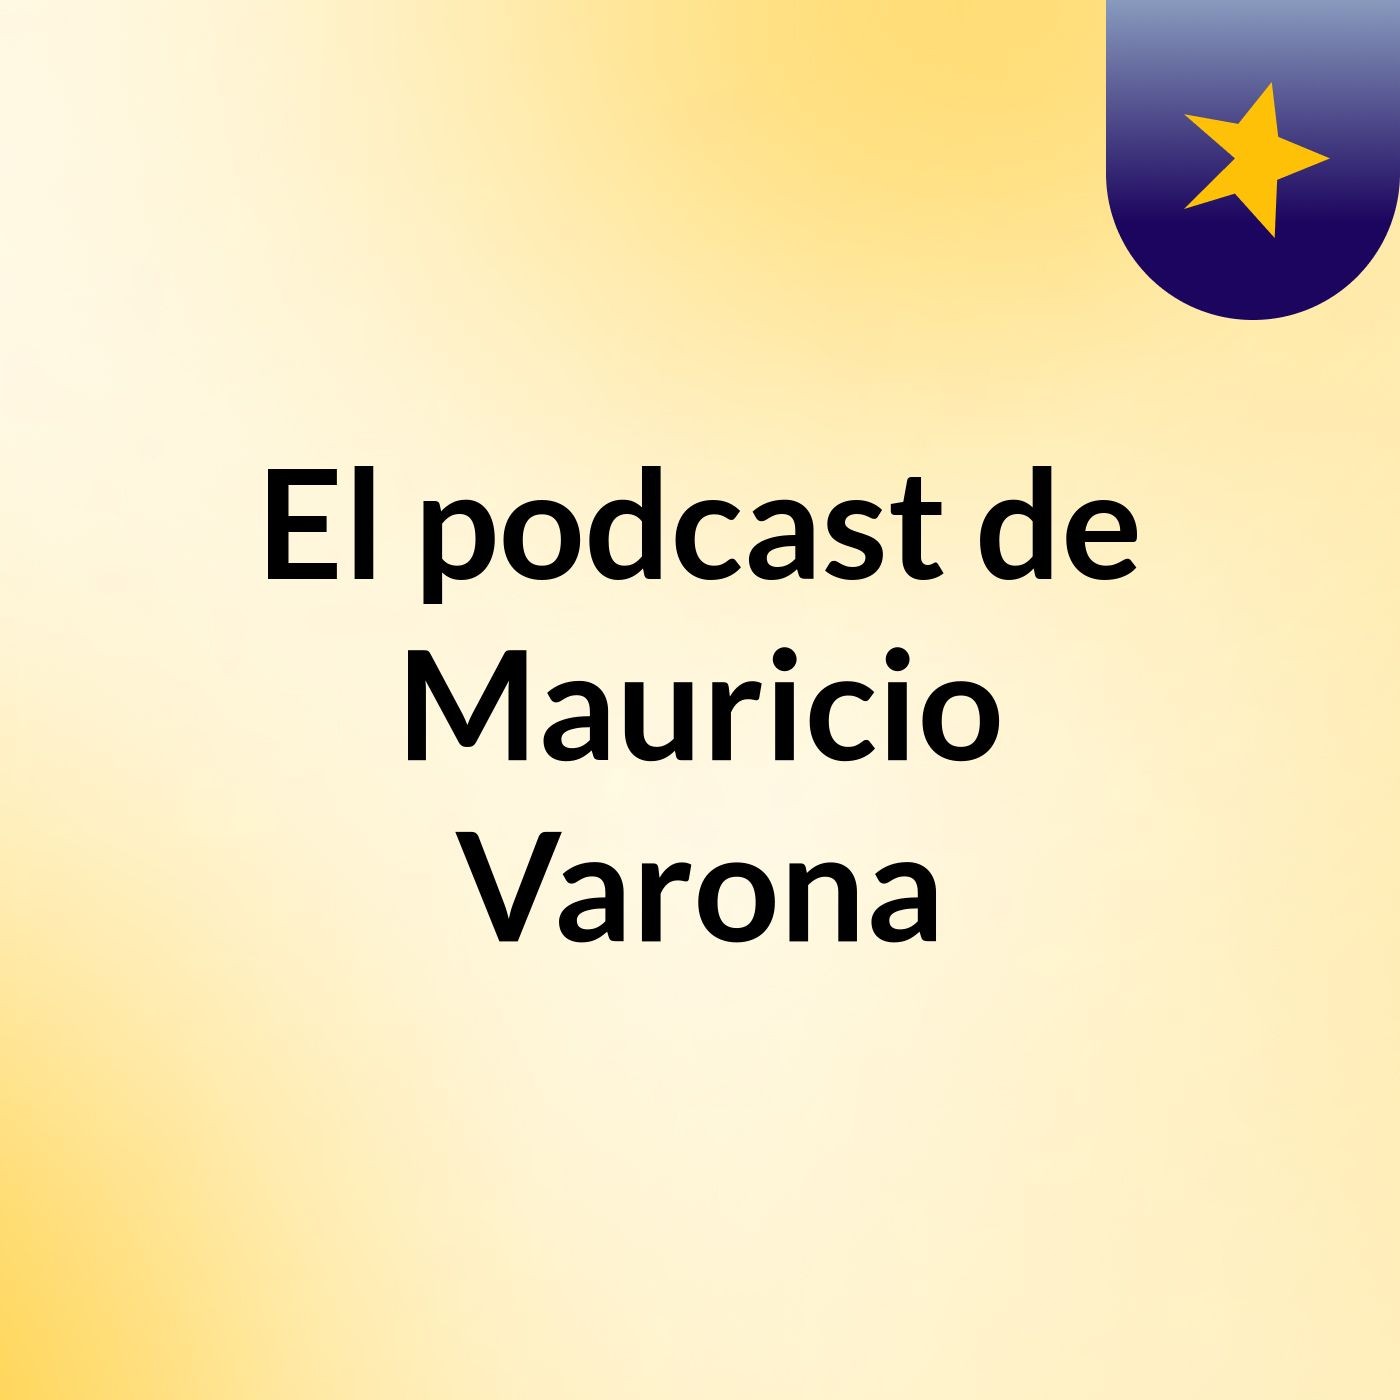 El podcast de Mauricio Varona